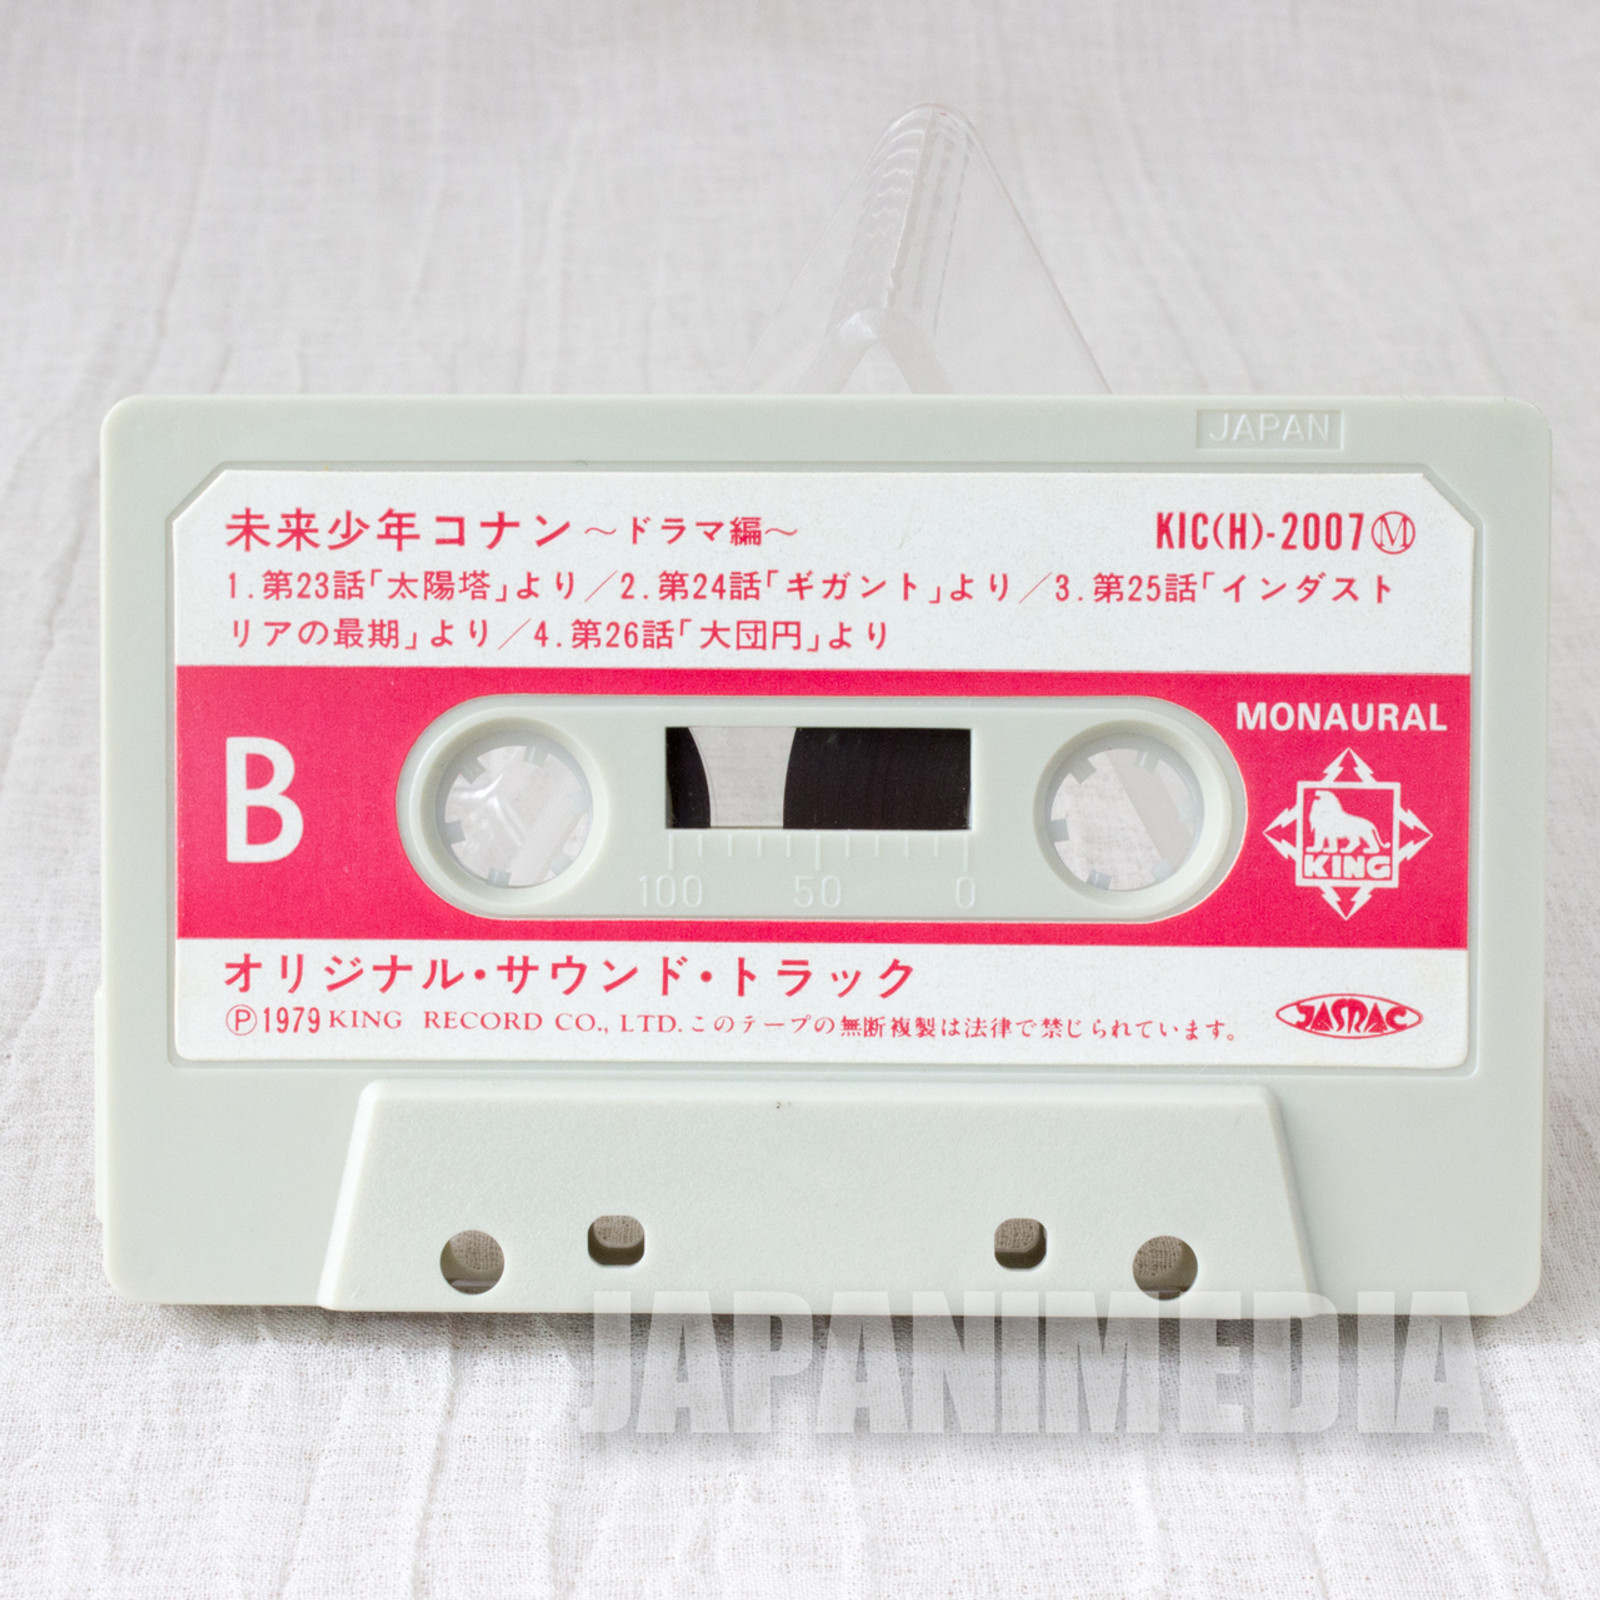 RARE! Future Boy Conan Drama Cassette Tape JAPAN ANIME HAYAO MIYAZAKI